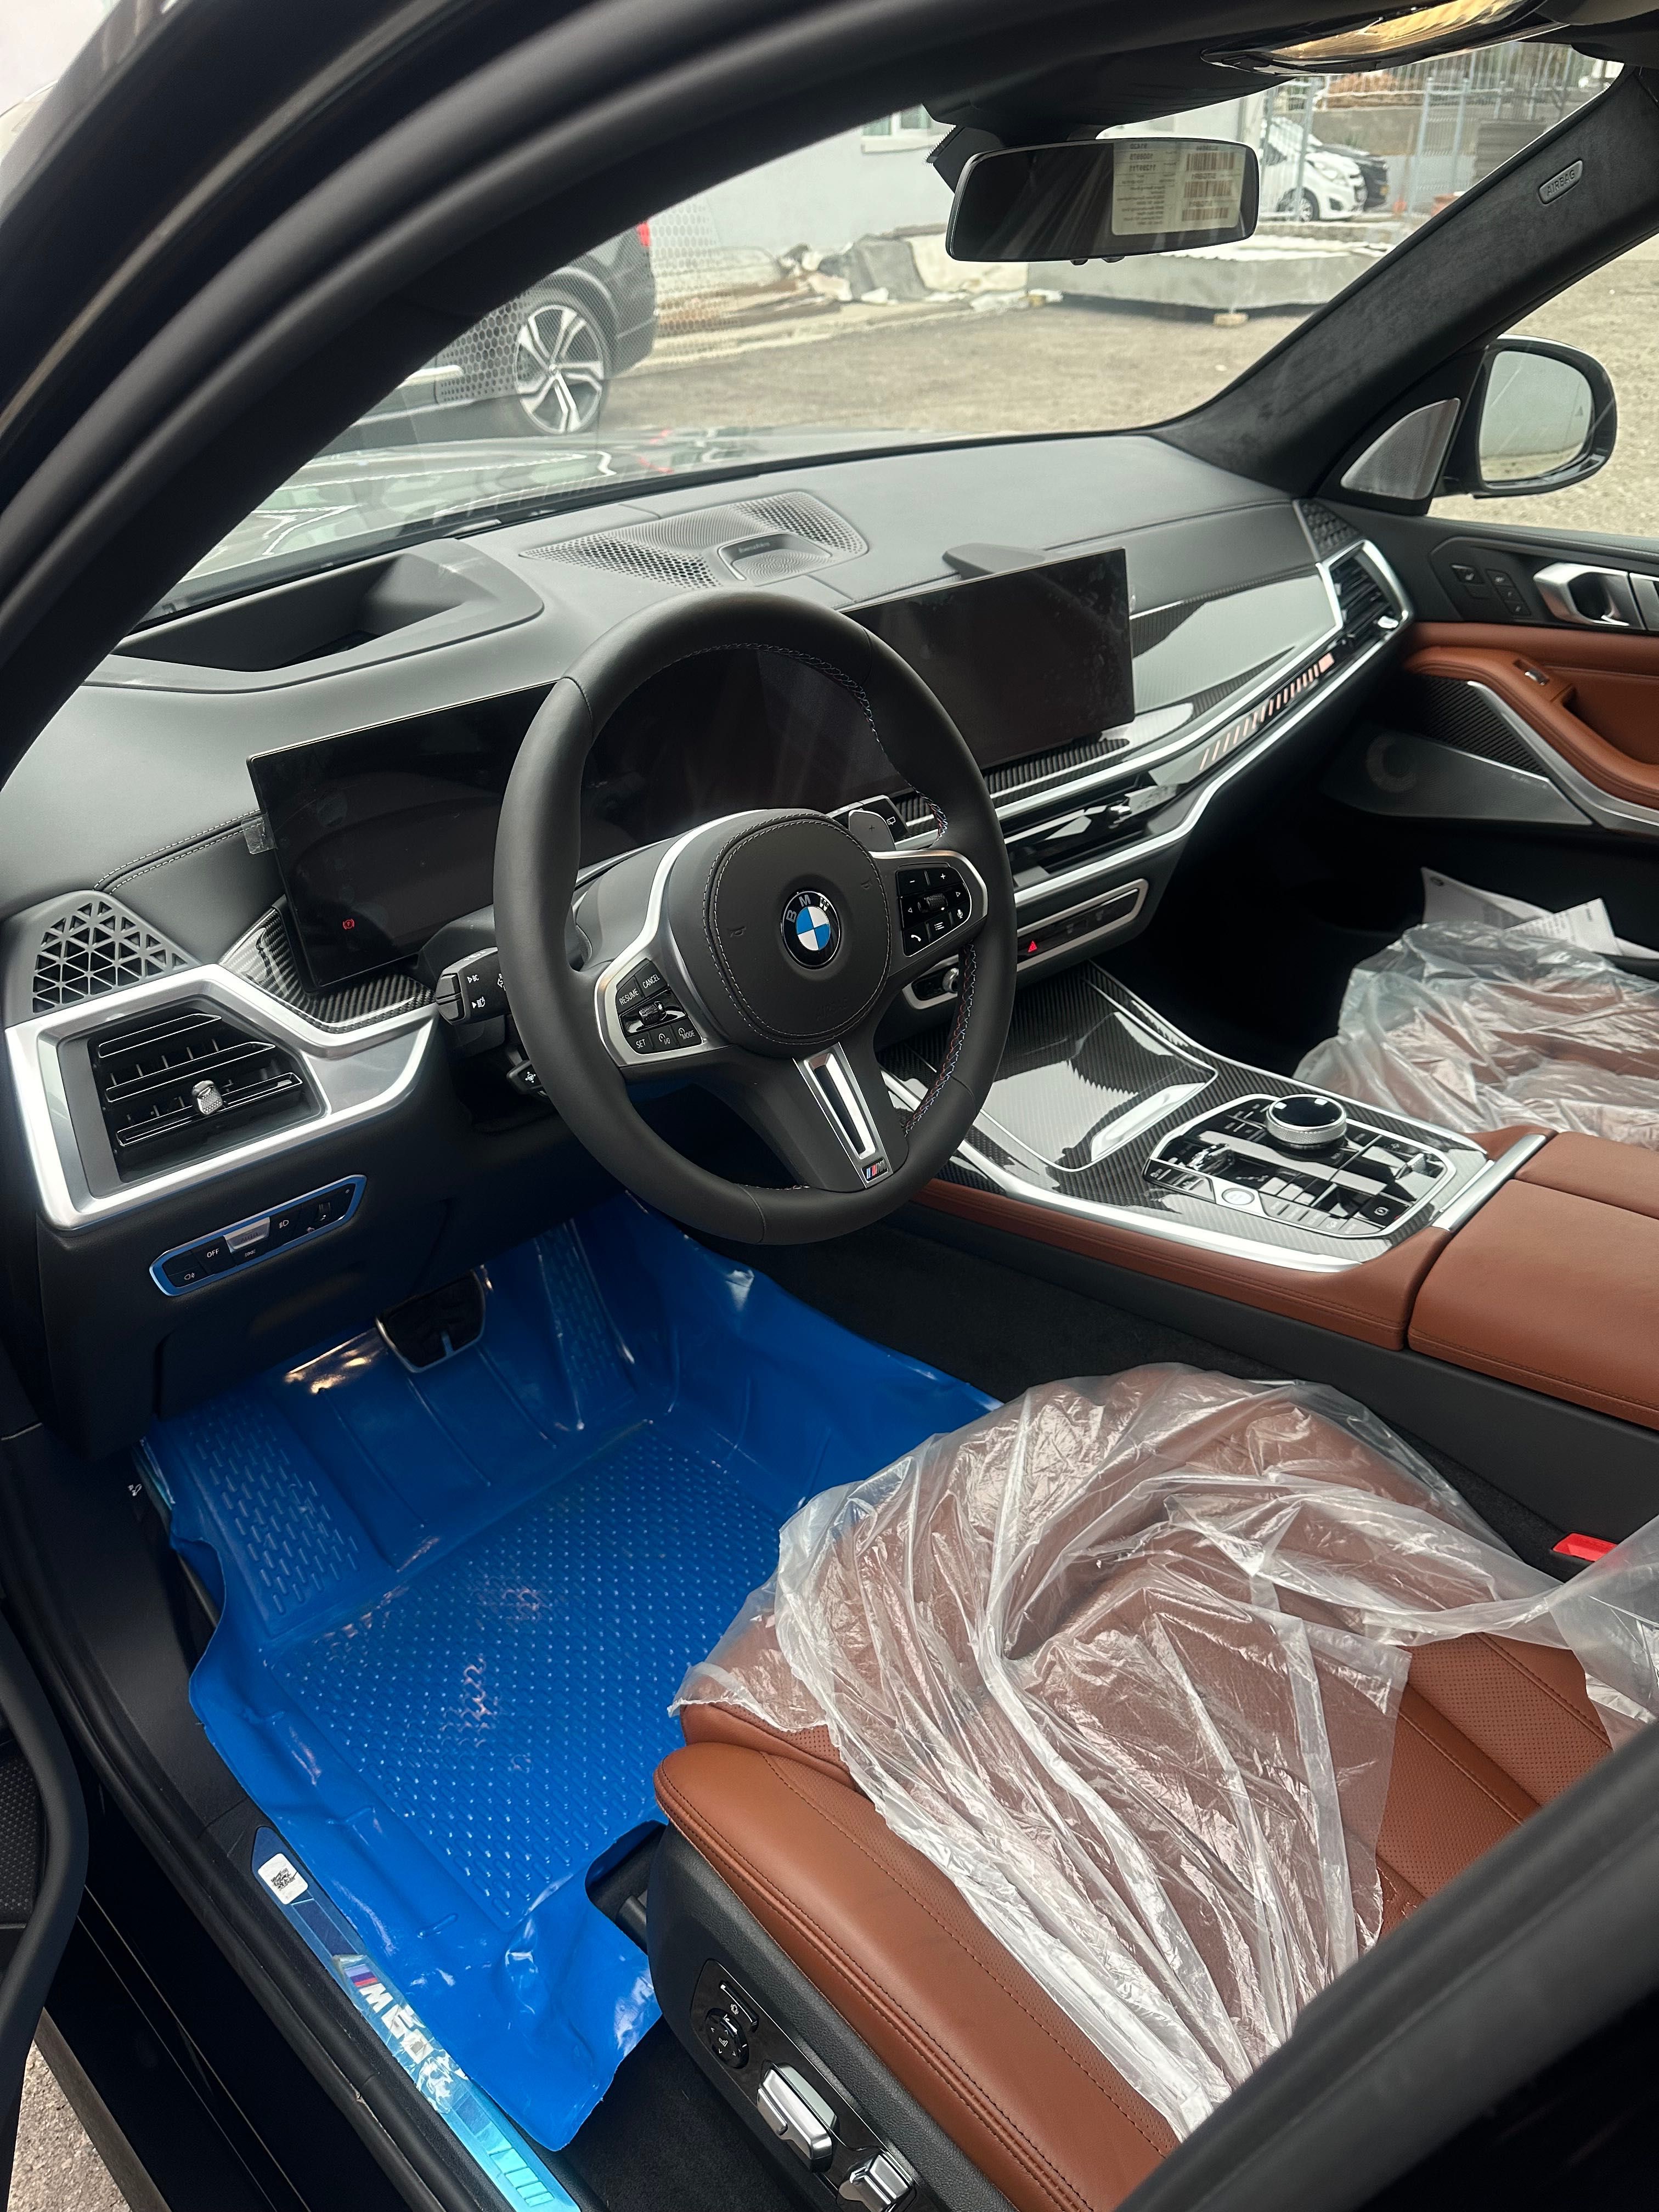 Продам новый BMW X7 M60 FULL в наличии ! c гарантией !